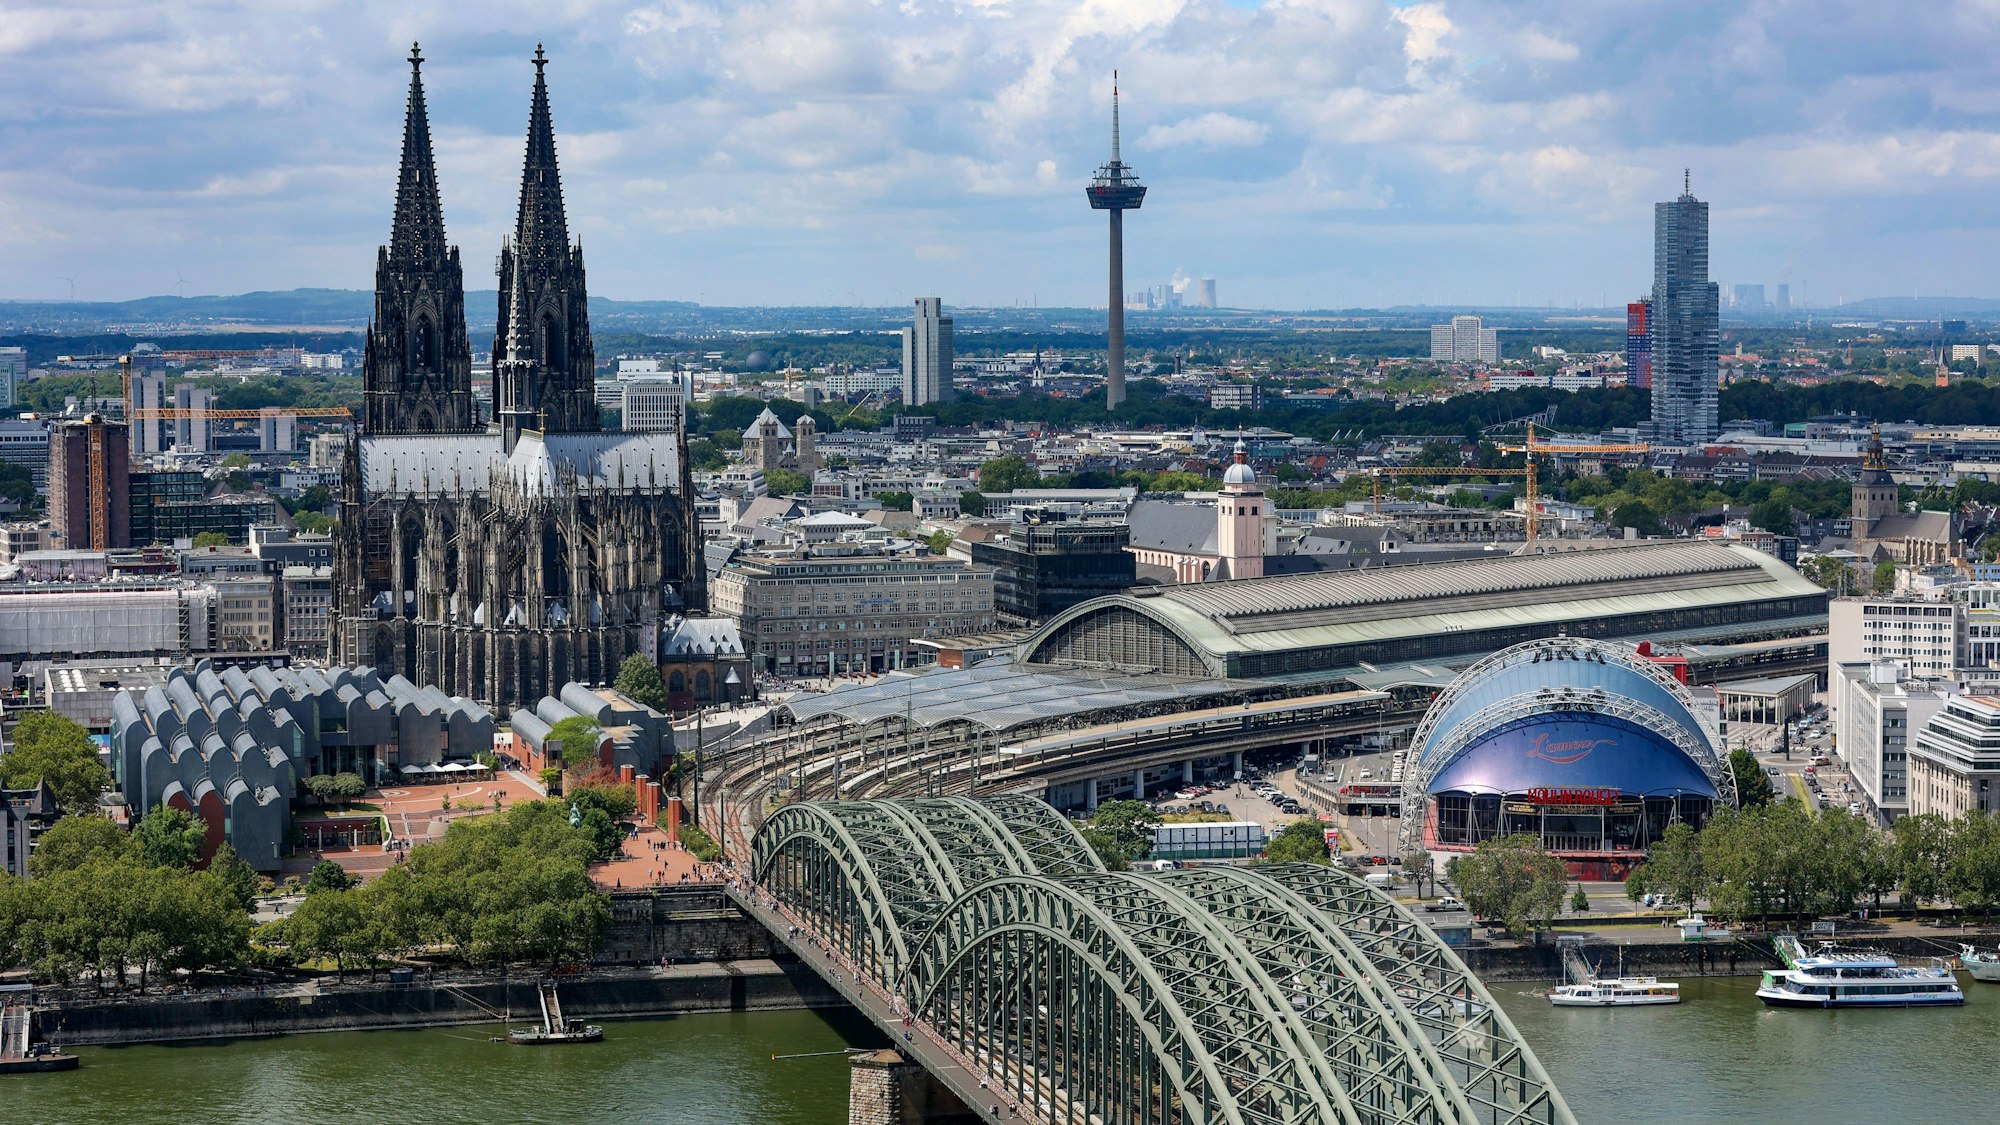 Der Kölner Dom mit Hohenzollernbrücke vom LVR-Turm aus fotografiert

